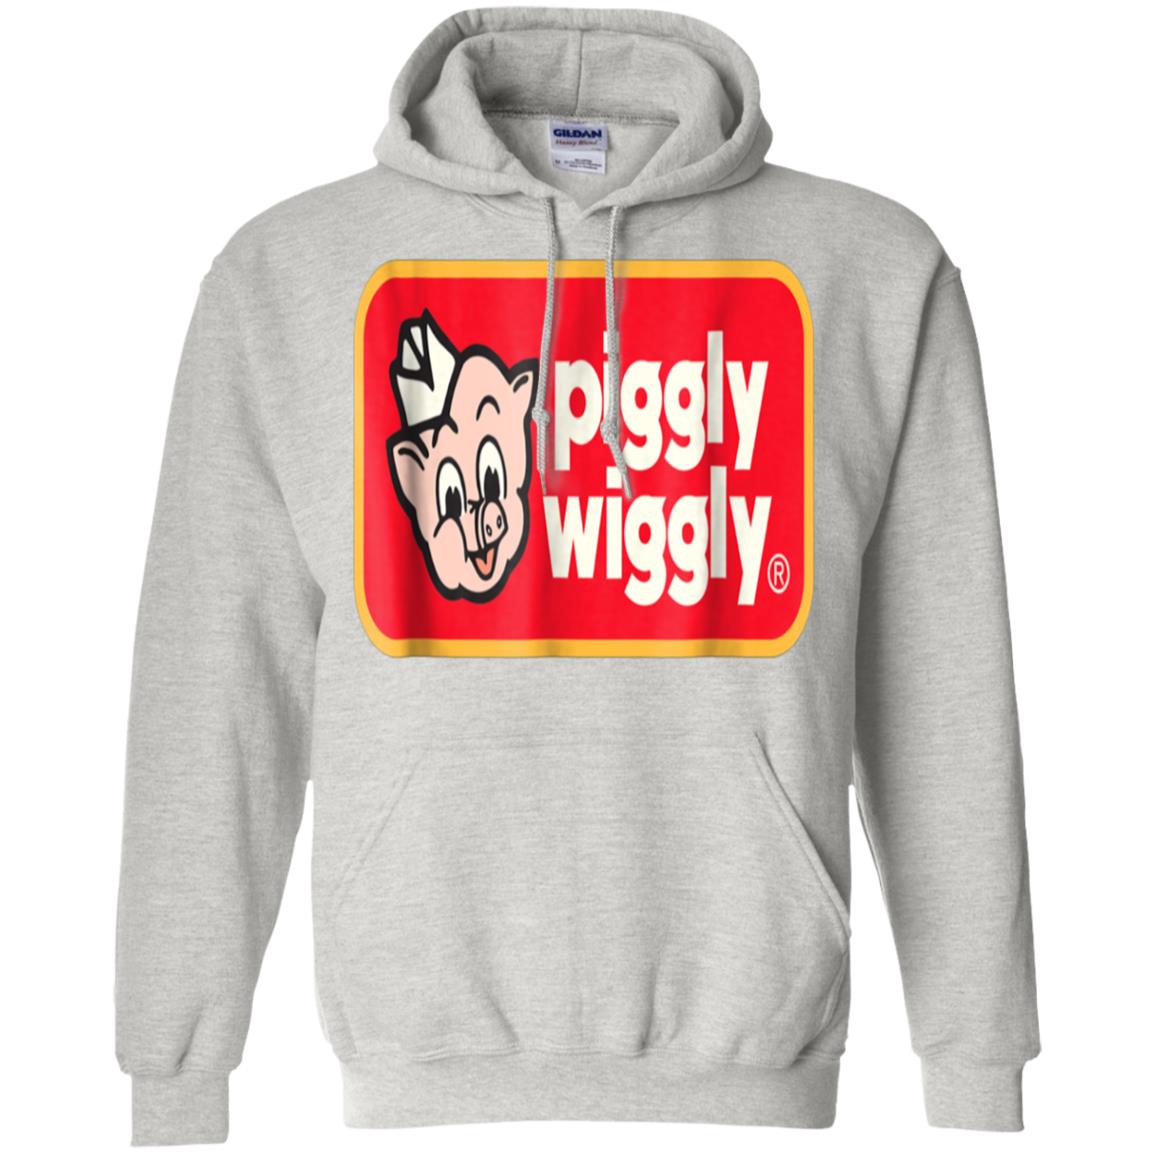 piggly wiggly sweatshirt